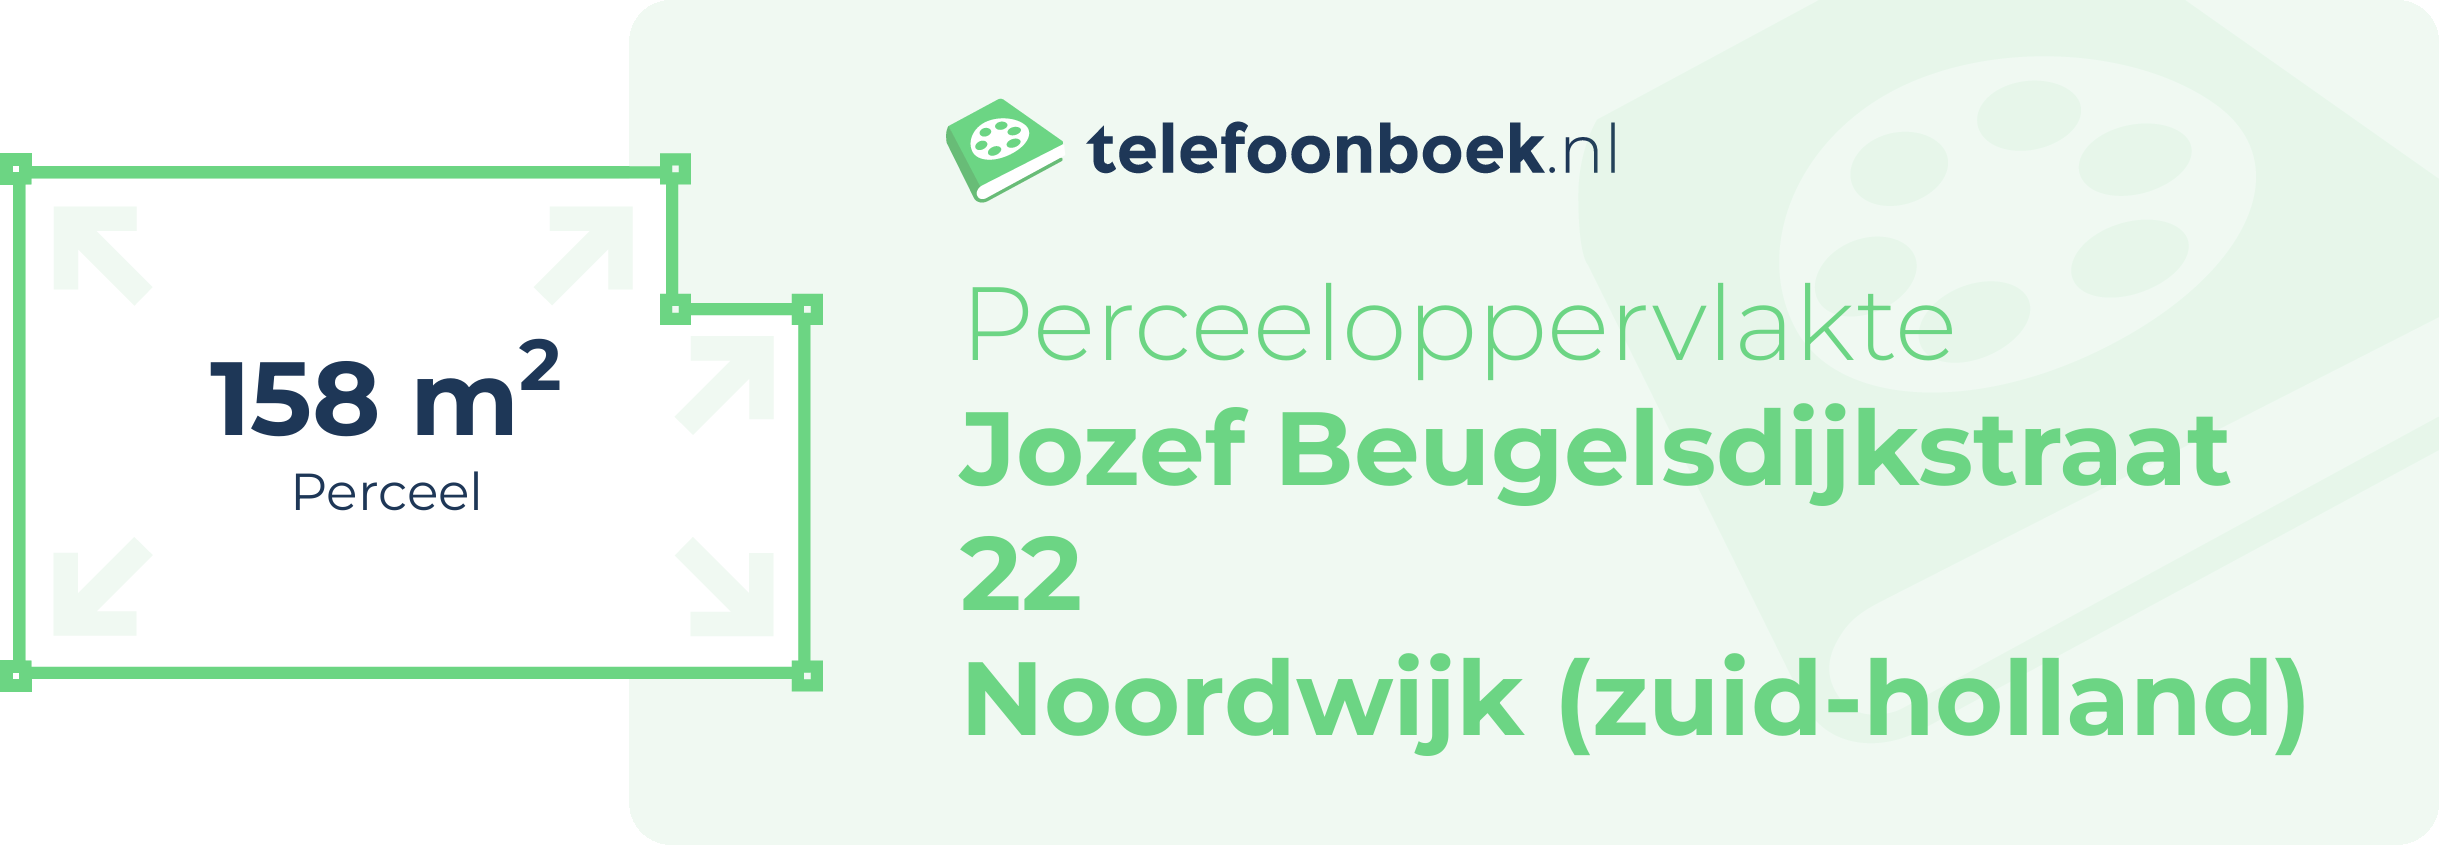 Perceeloppervlakte Jozef Beugelsdijkstraat 22 Noordwijk (Zuid-Holland)